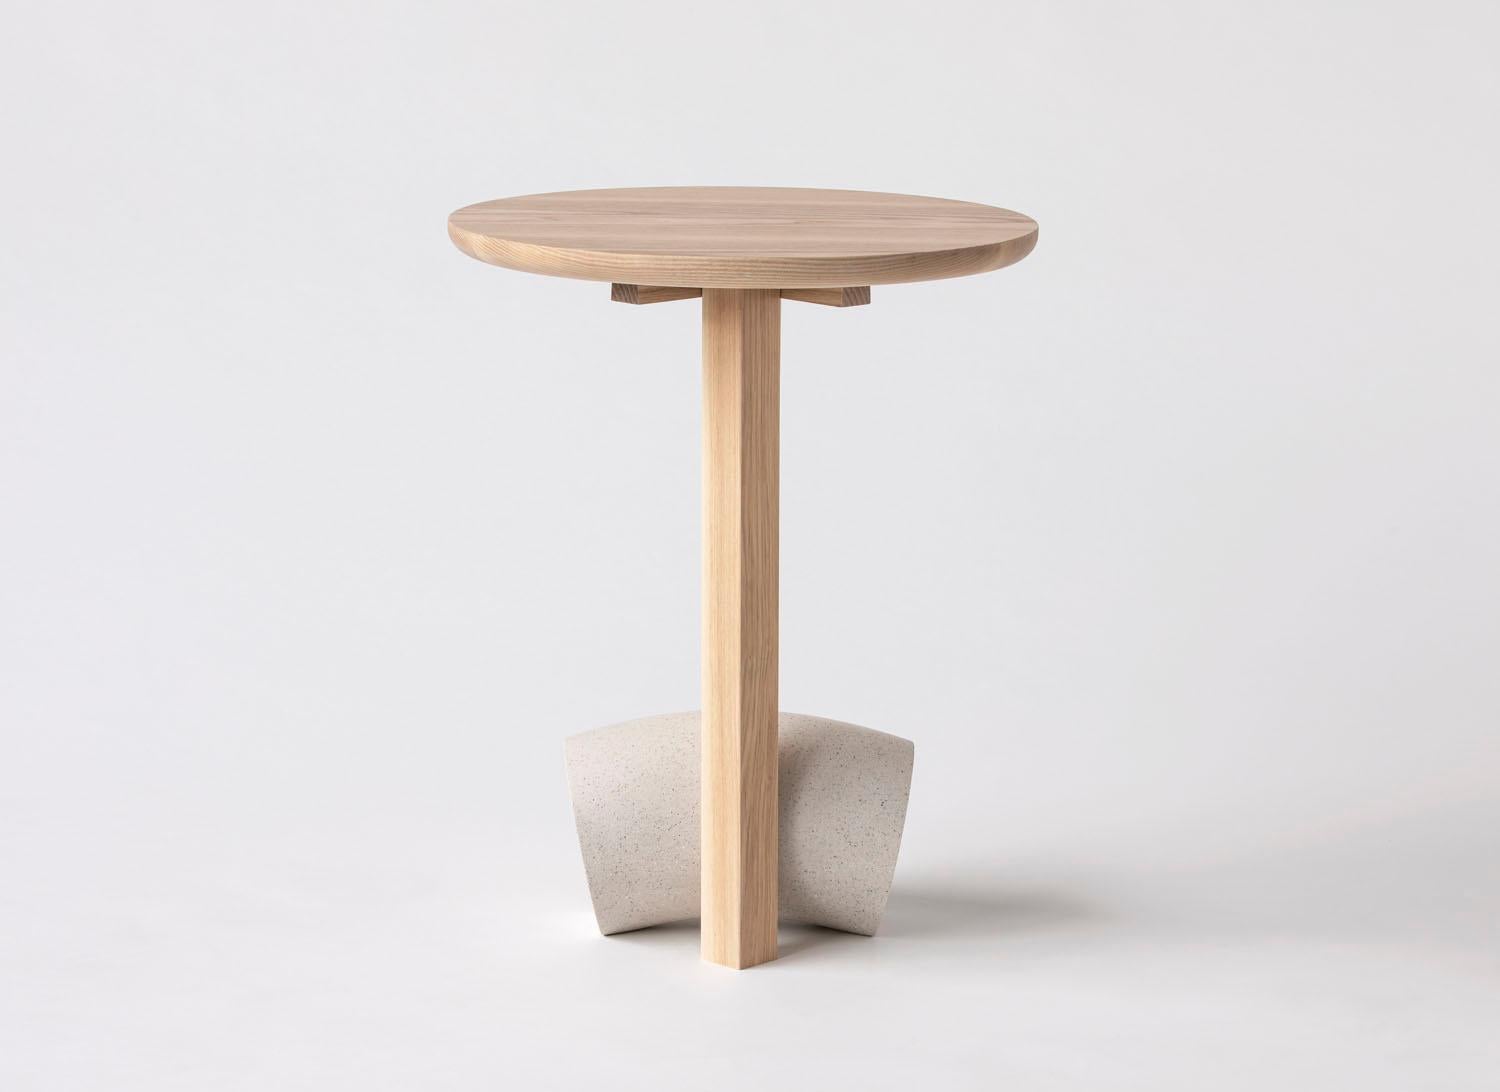 Die Poise-Kollektion umfasst eine Reihe skulpturaler Tische und Sitzmöbel, die die Wärme von Eschenholz mit der Schwere von Kunststein poetisch verbinden. Die Möbelstücke nutzen eine einzigartige Tischlermethode, um eine verblüffende und doch